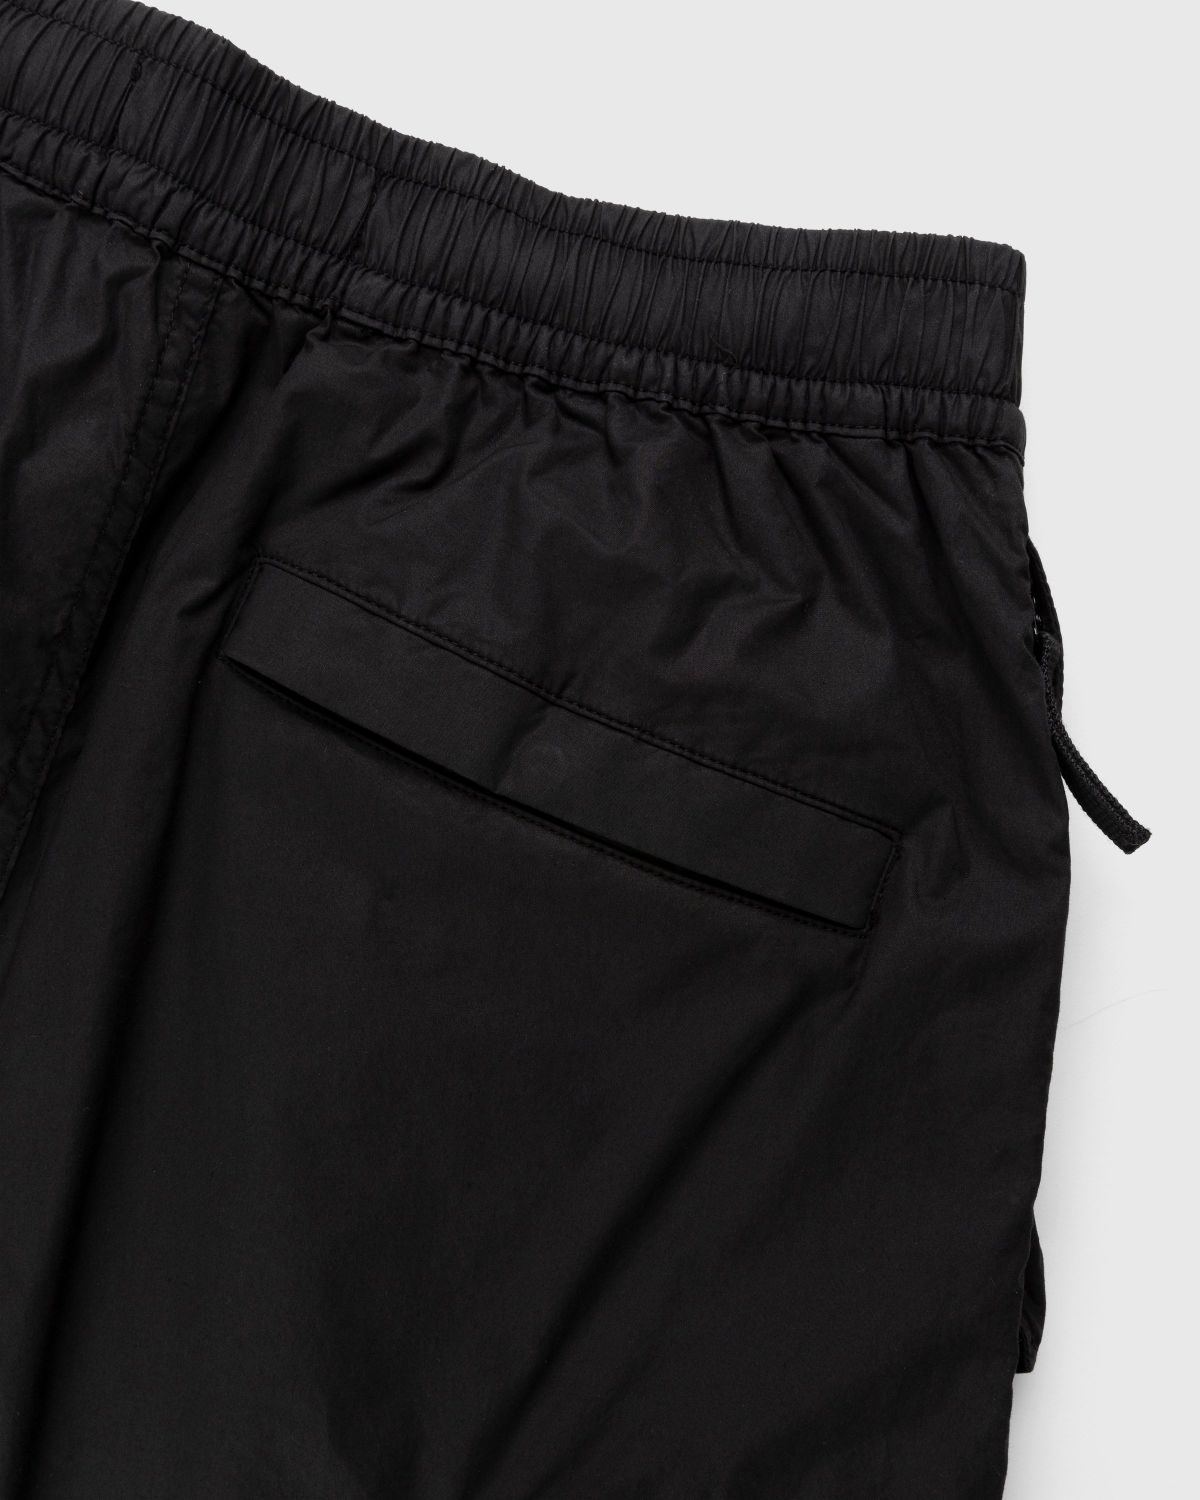 Stone Island – L0103 Garment-Dyed Shorts Black - Shorts - Black - Image 5